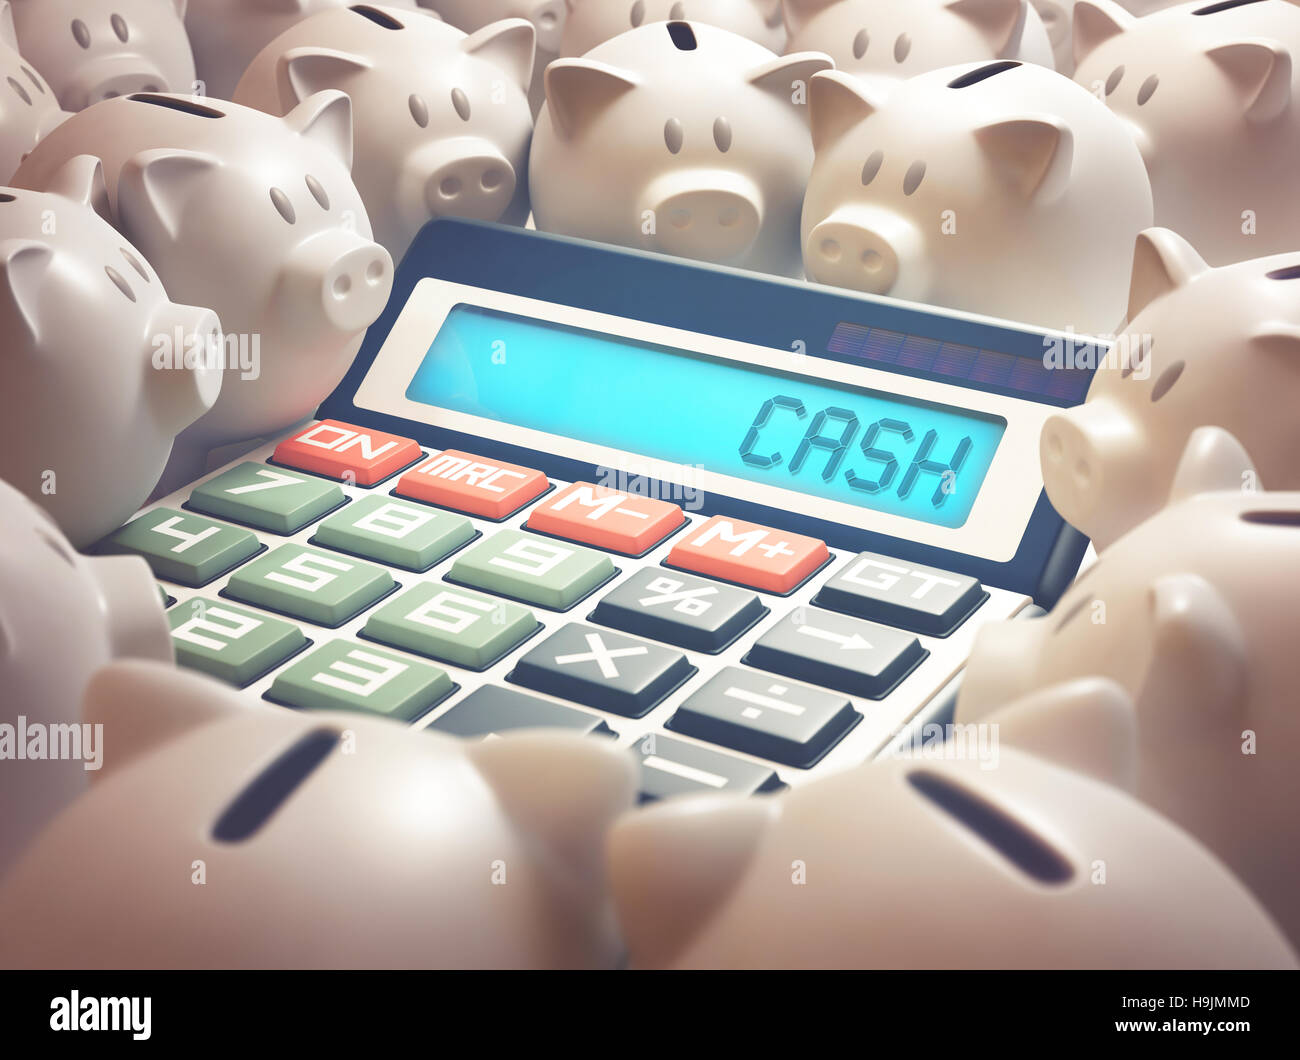 Rechner inmitten mehrere Sparschweine zeigt auf dem Display das Wort "CASH". 3D Illustration, Wirtschaft und Finanzen-Konzept. Stockfoto